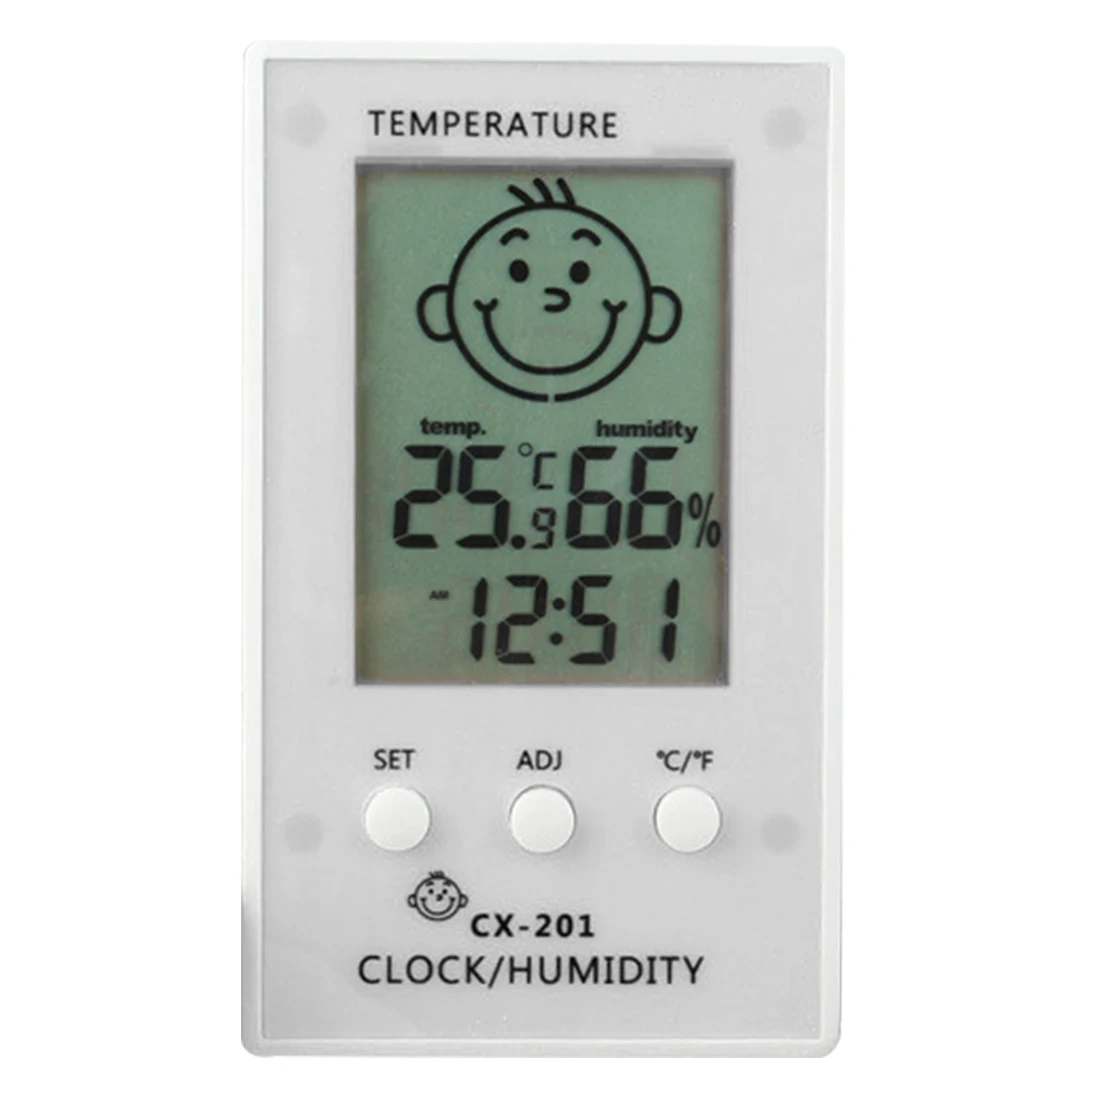 ЖК-цифровой термометр гигрометр настольные часы измерение температуры и влажности температура Метеостанция диагностический инструмент - Цвет: Белый